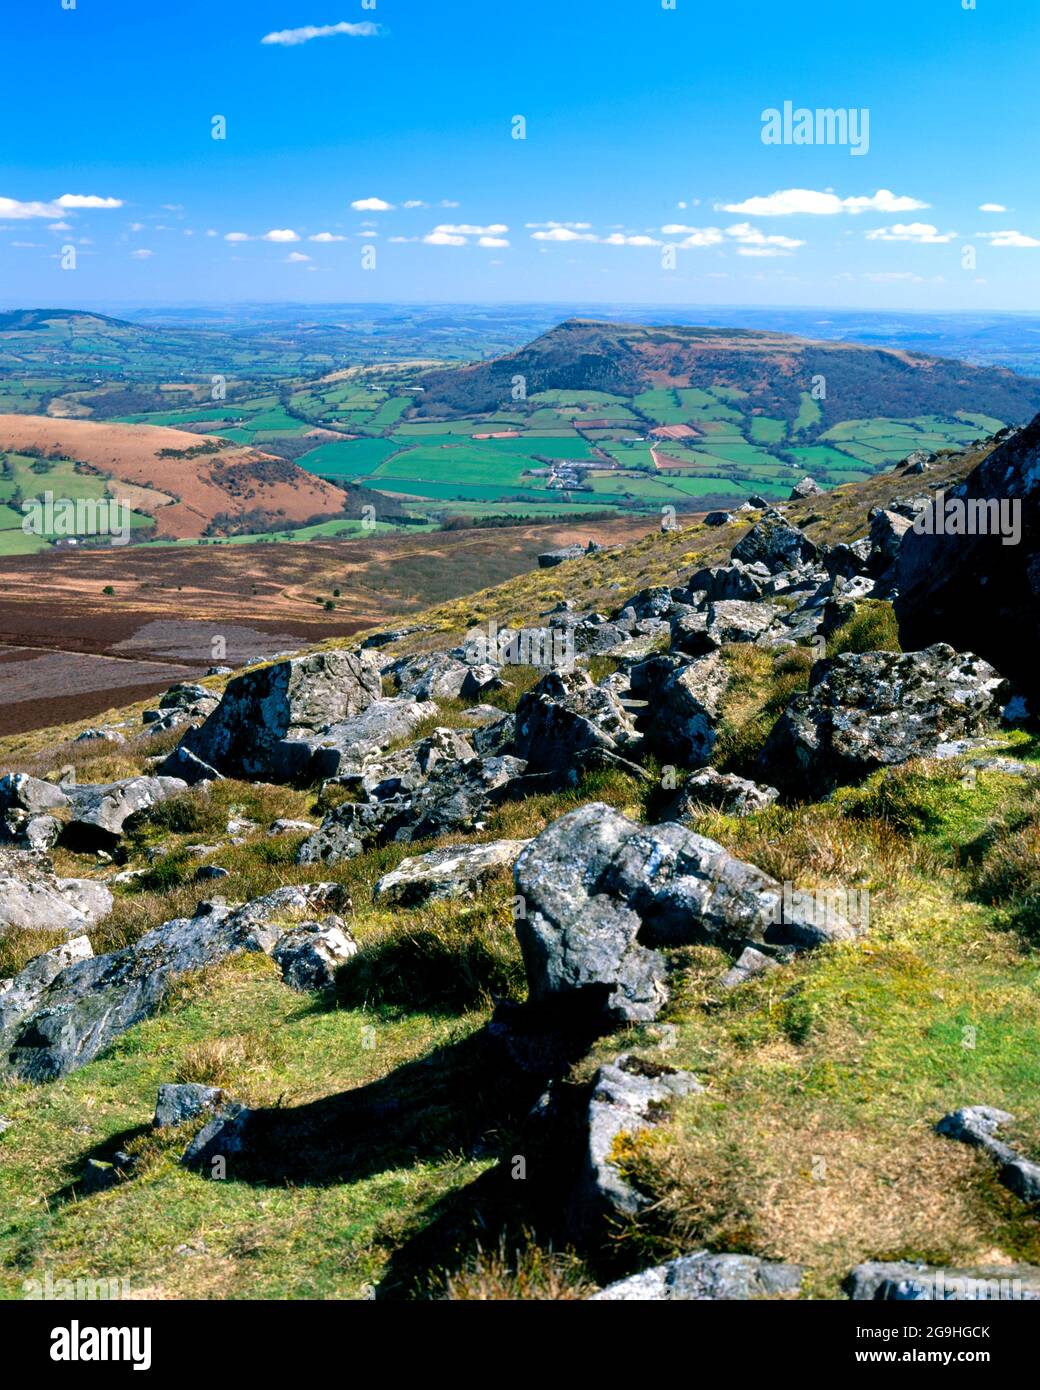 Vue depuis le sommet du mont Sugarloaf en direction du mont Skirrid, Abergavenny, Monbucshire, pays de Galles du Sud. Banque D'Images